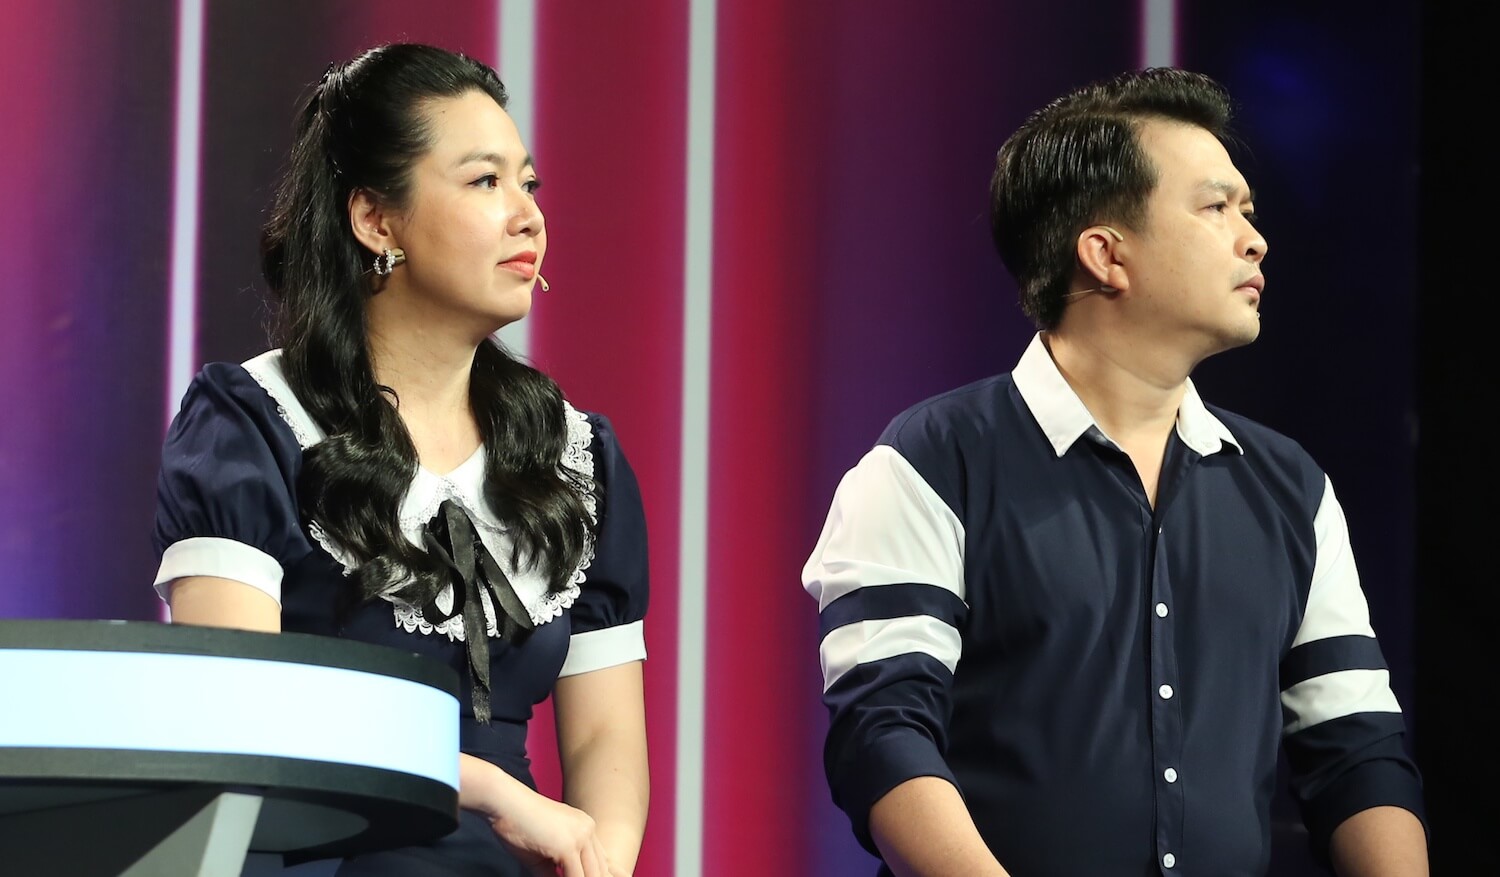 Lê Khánh tuyên bố 'ghim' ông xã trên sóng truyền hình